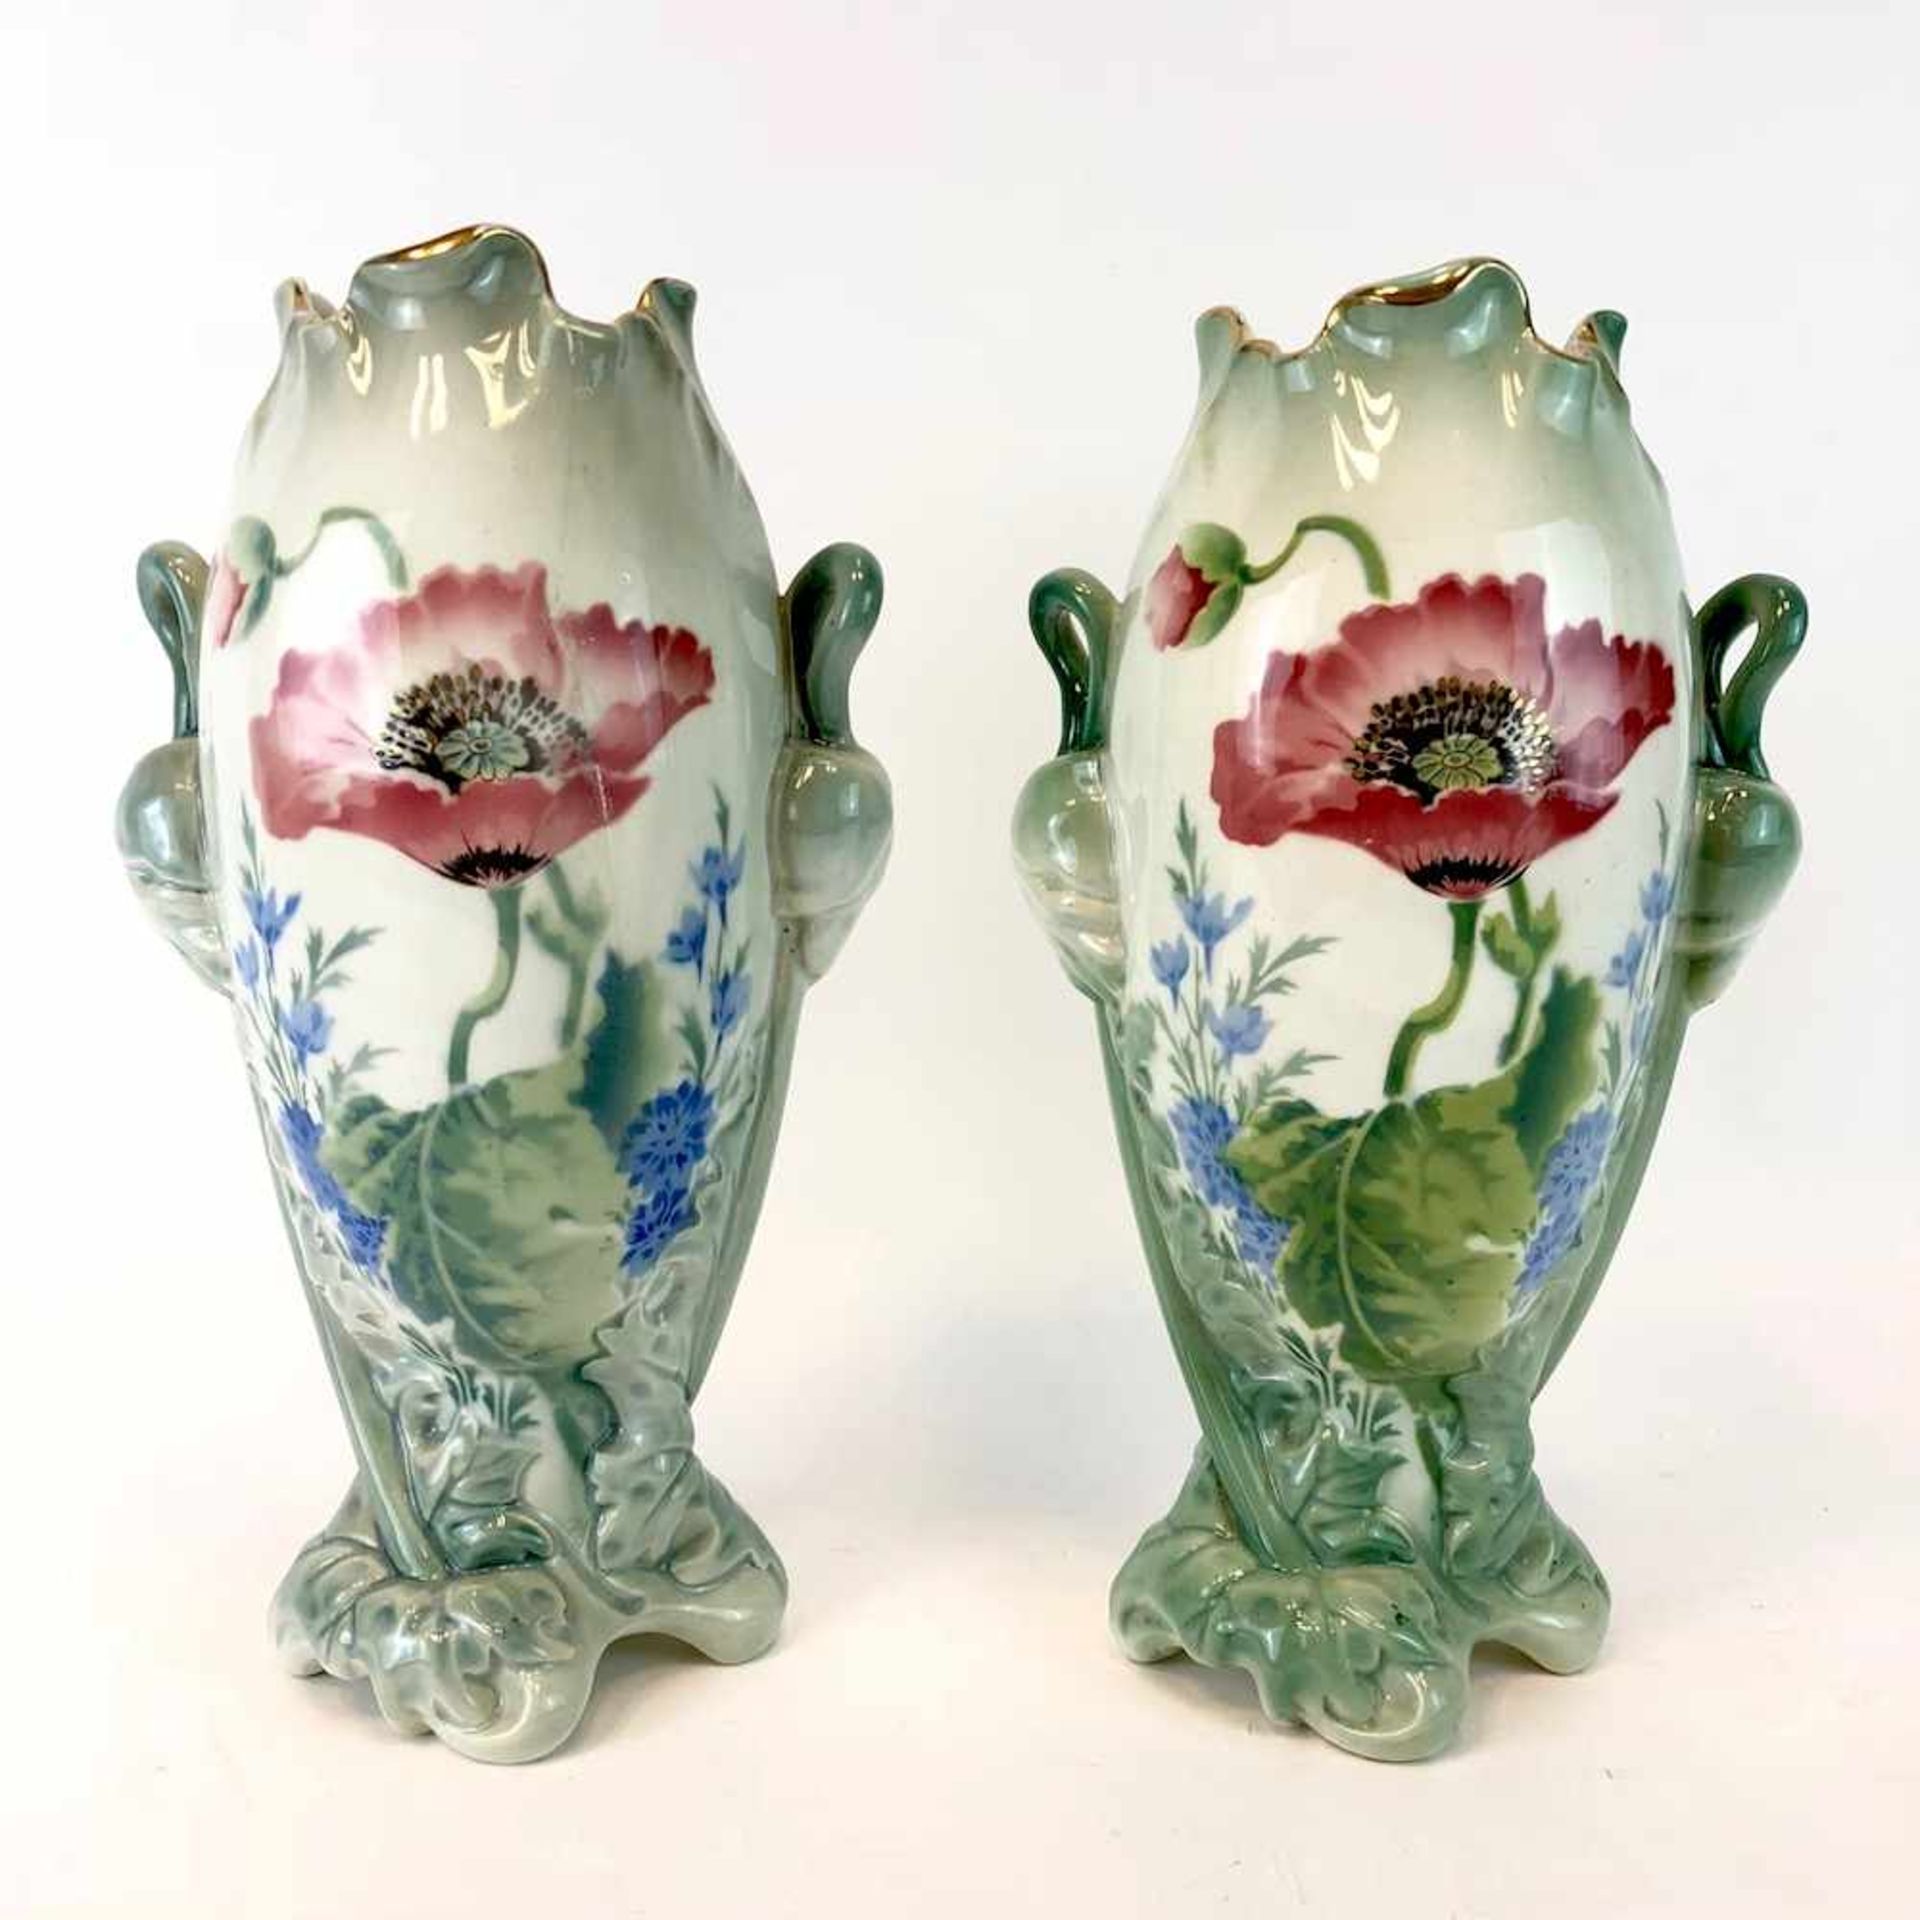 Paar Jugendtsil Vasen: Dekor Mohnblumen und Rittersporn. Luneville Faience / Fayence. Um 1900.